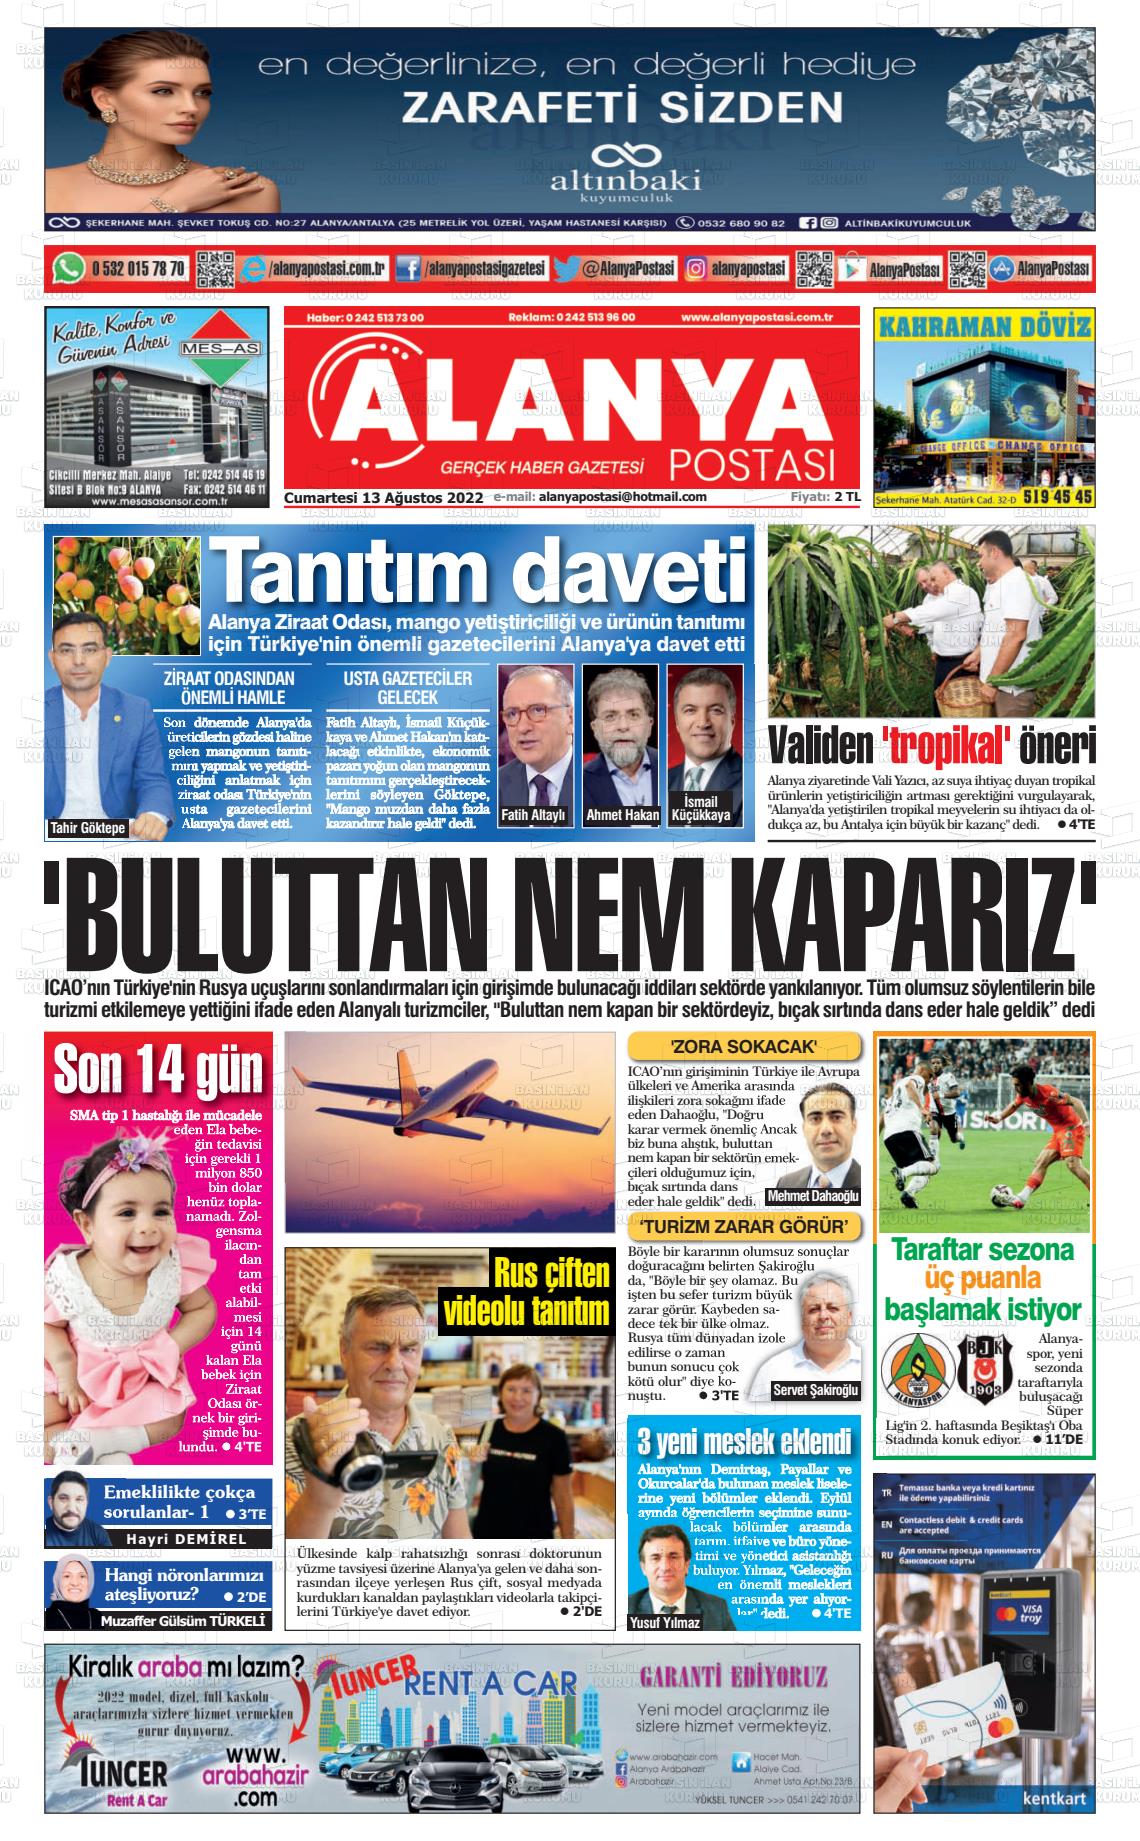 13 Ağustos 2022 Alanya Postası Gazete Manşeti